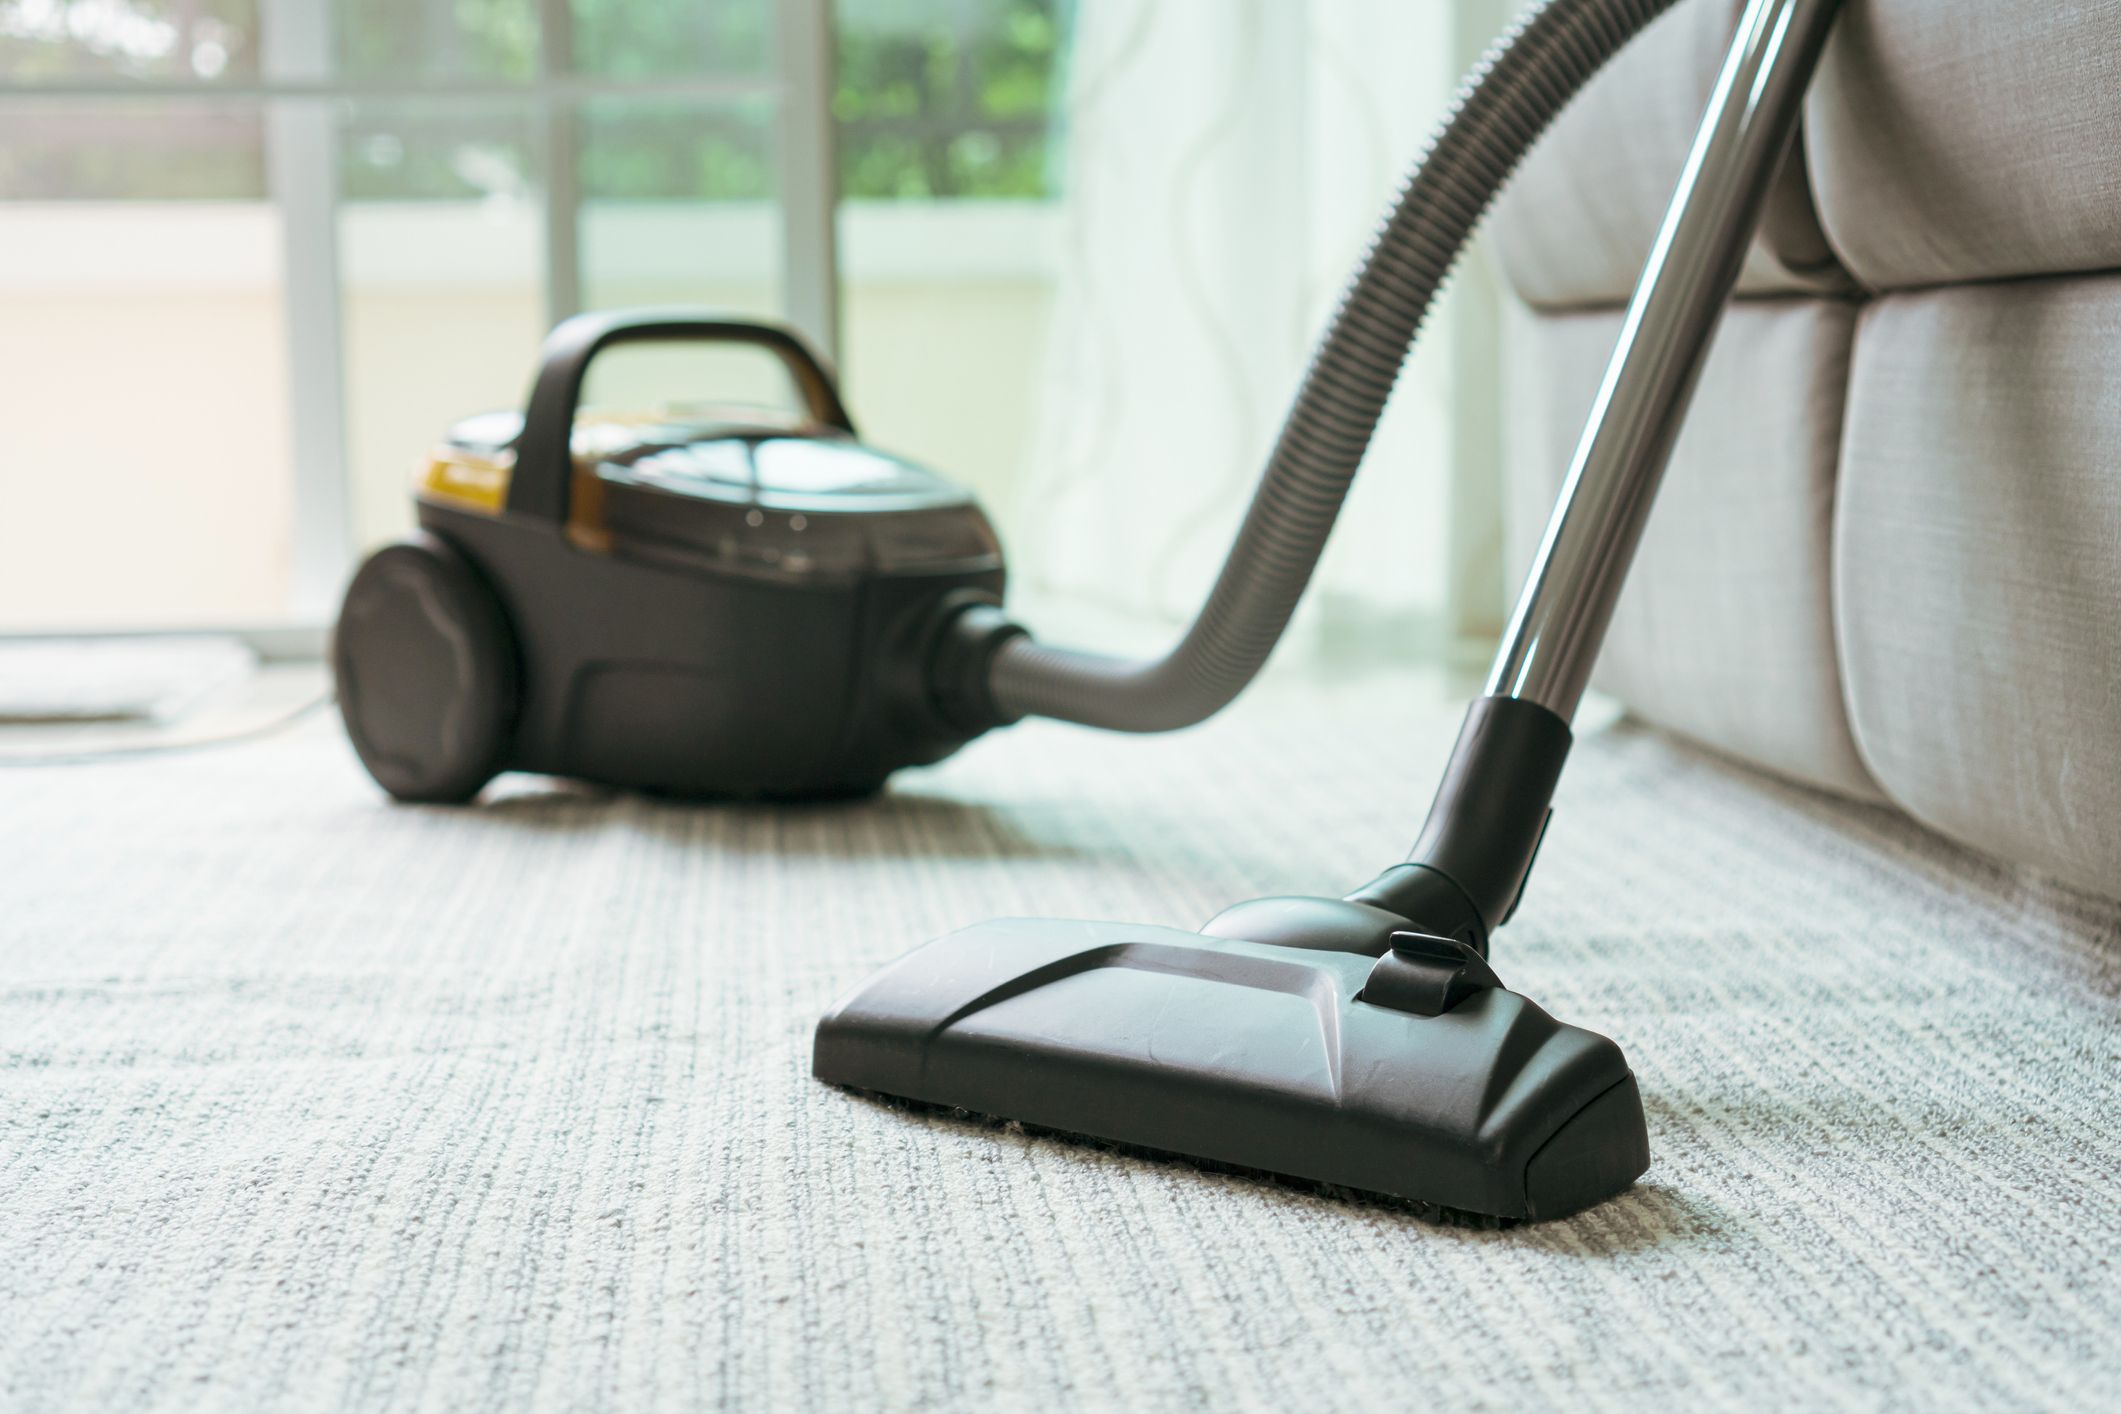 8 Best Hepa Vacuum Cleaners Reviews 2021, Best Vacuum Cleaner For Rugs And Hardwood Floors